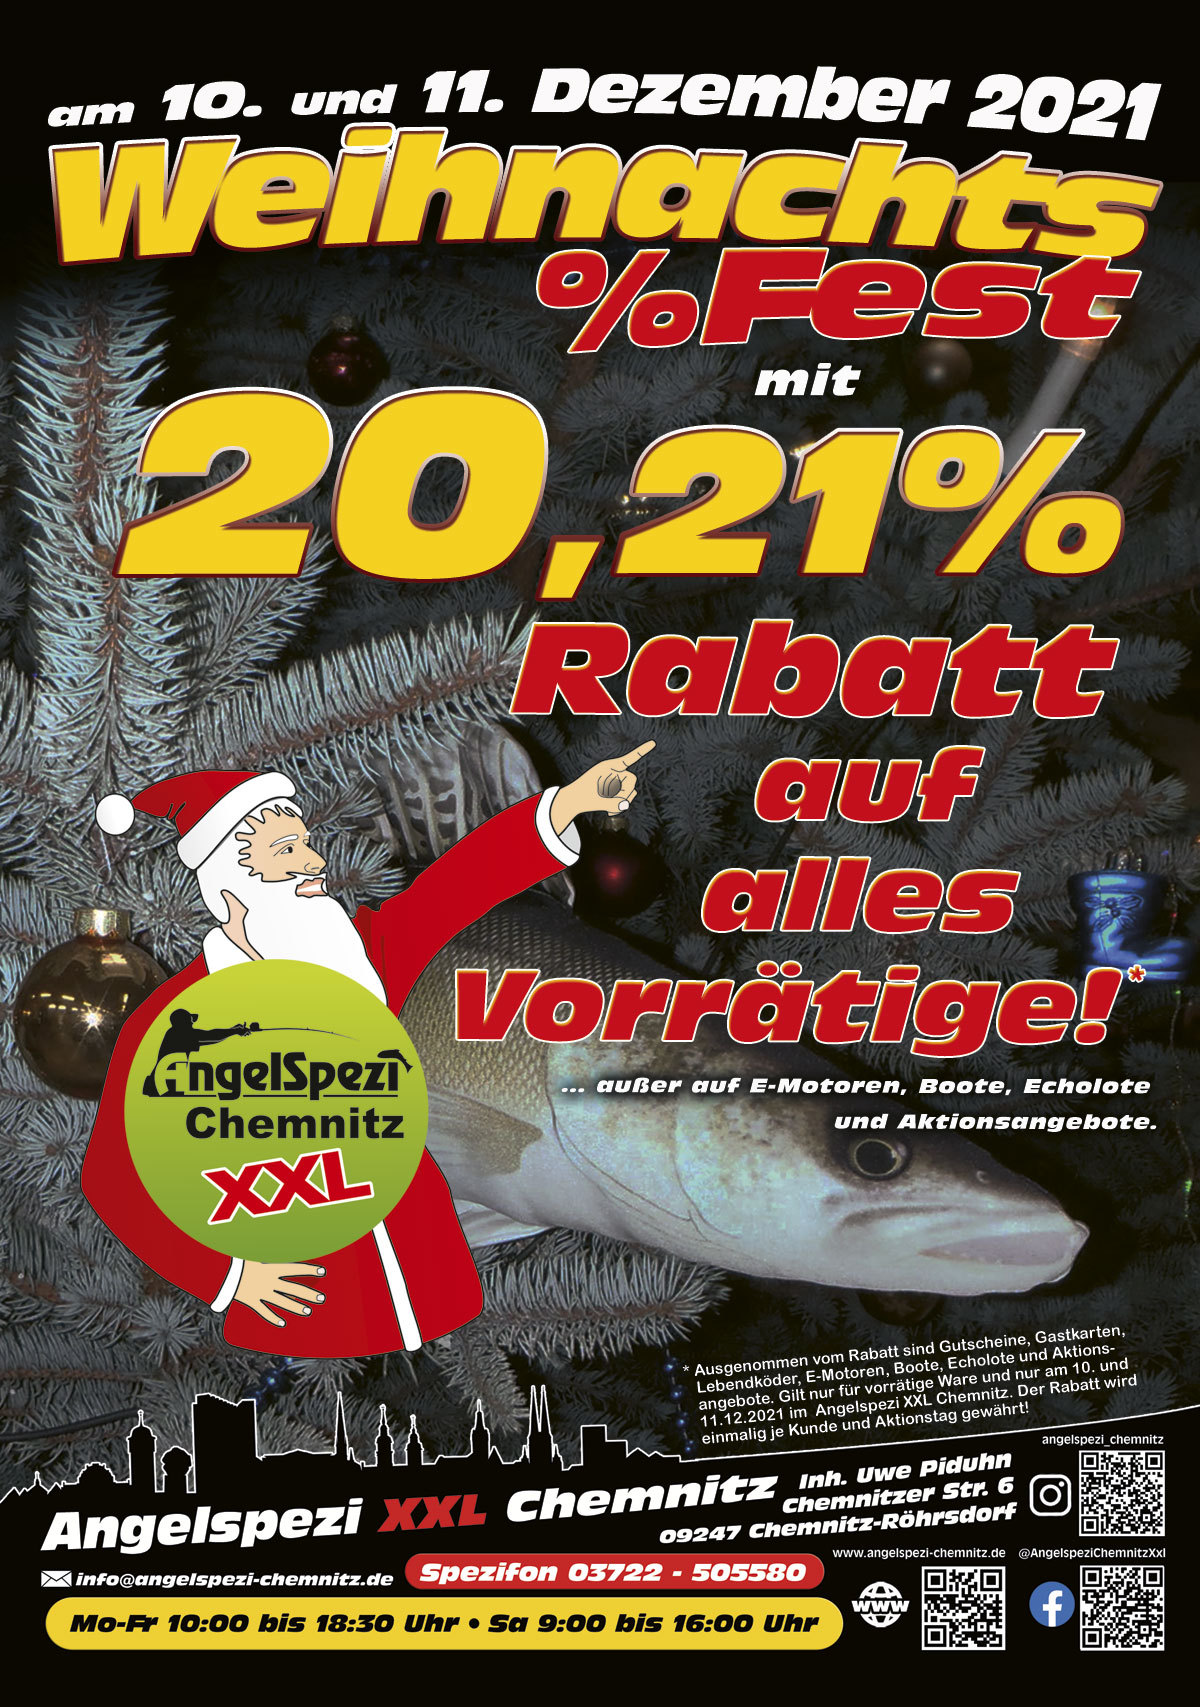  Weihnachts-Fest-Aktion am 10. und 11. Dezember 2021 im Angelspezi XXL Chemnitz